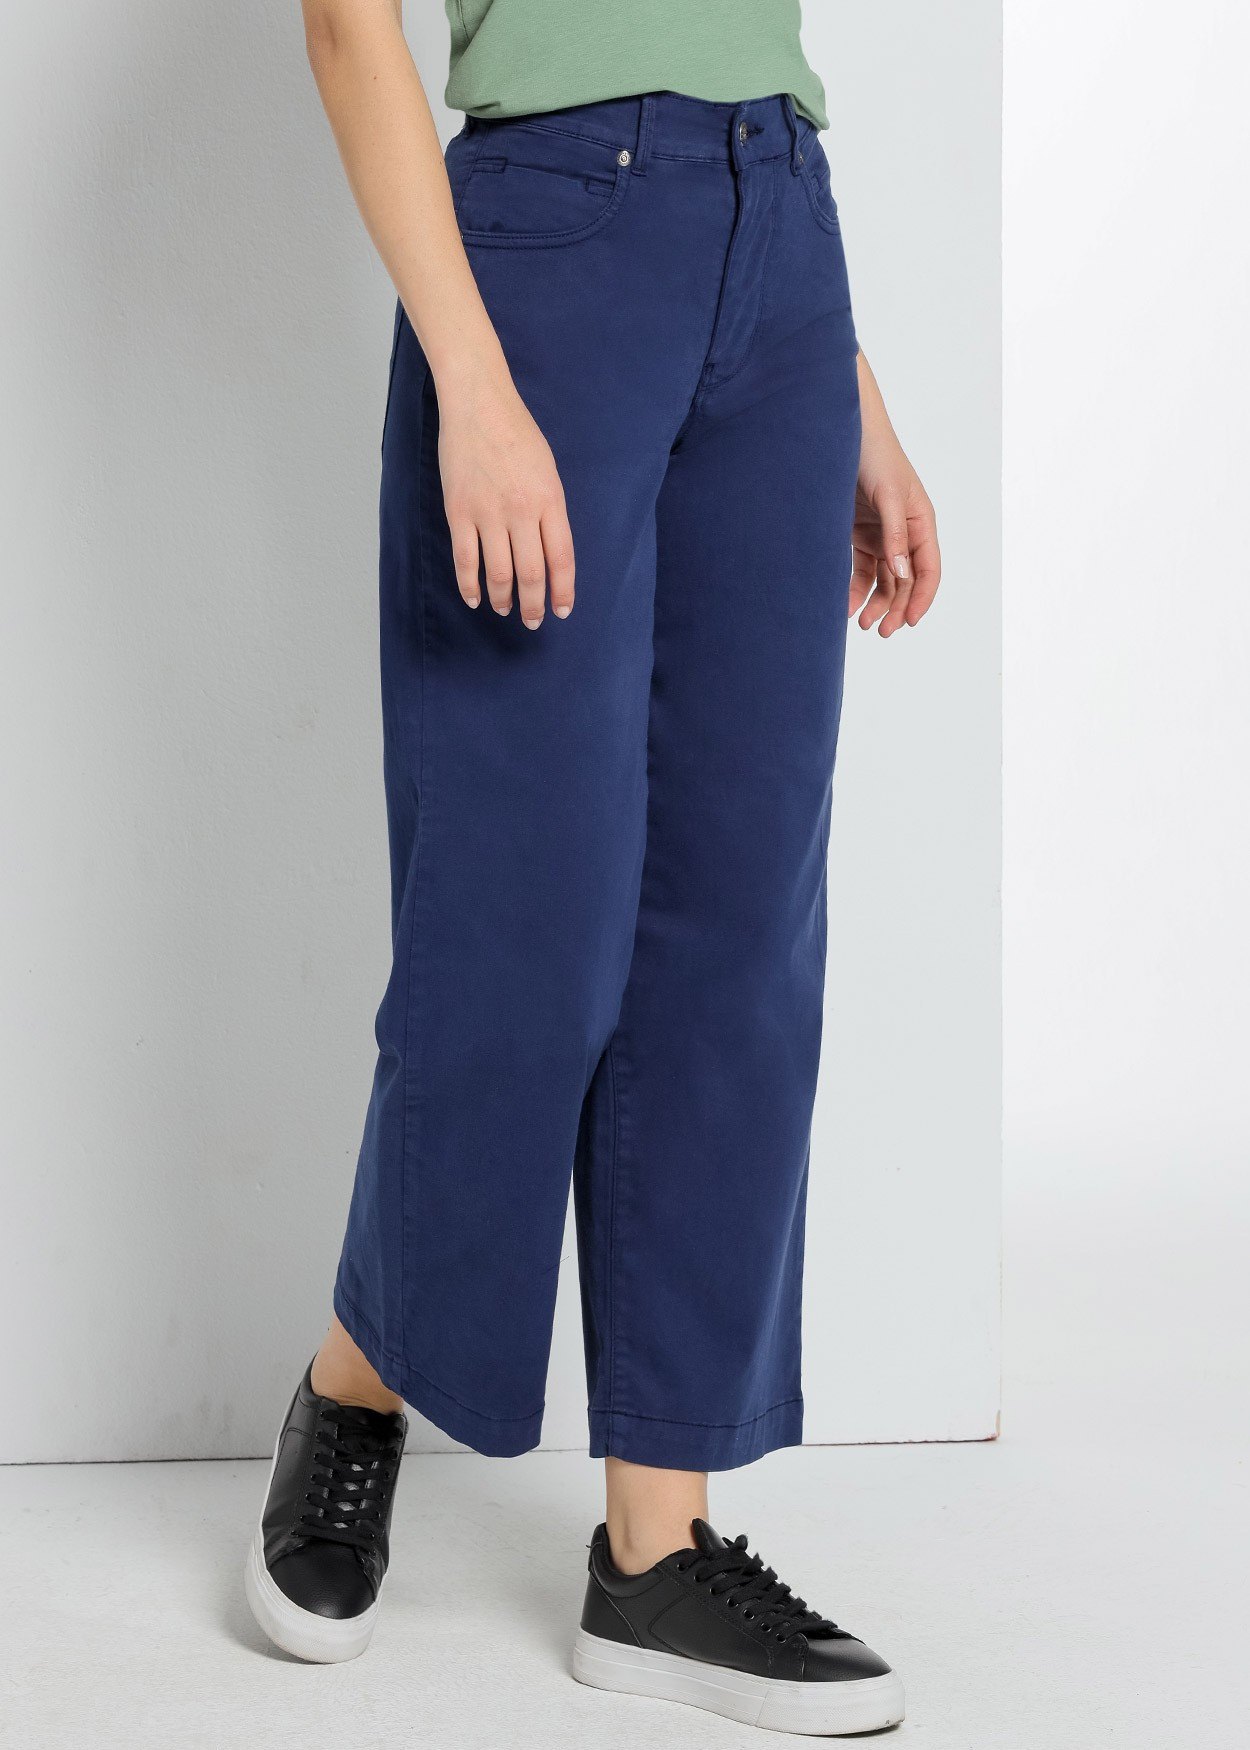 Jeans Aurora-Pêche Satin | Taille naturelle - Coupe droite large -court | Taille en pouces Cimarron